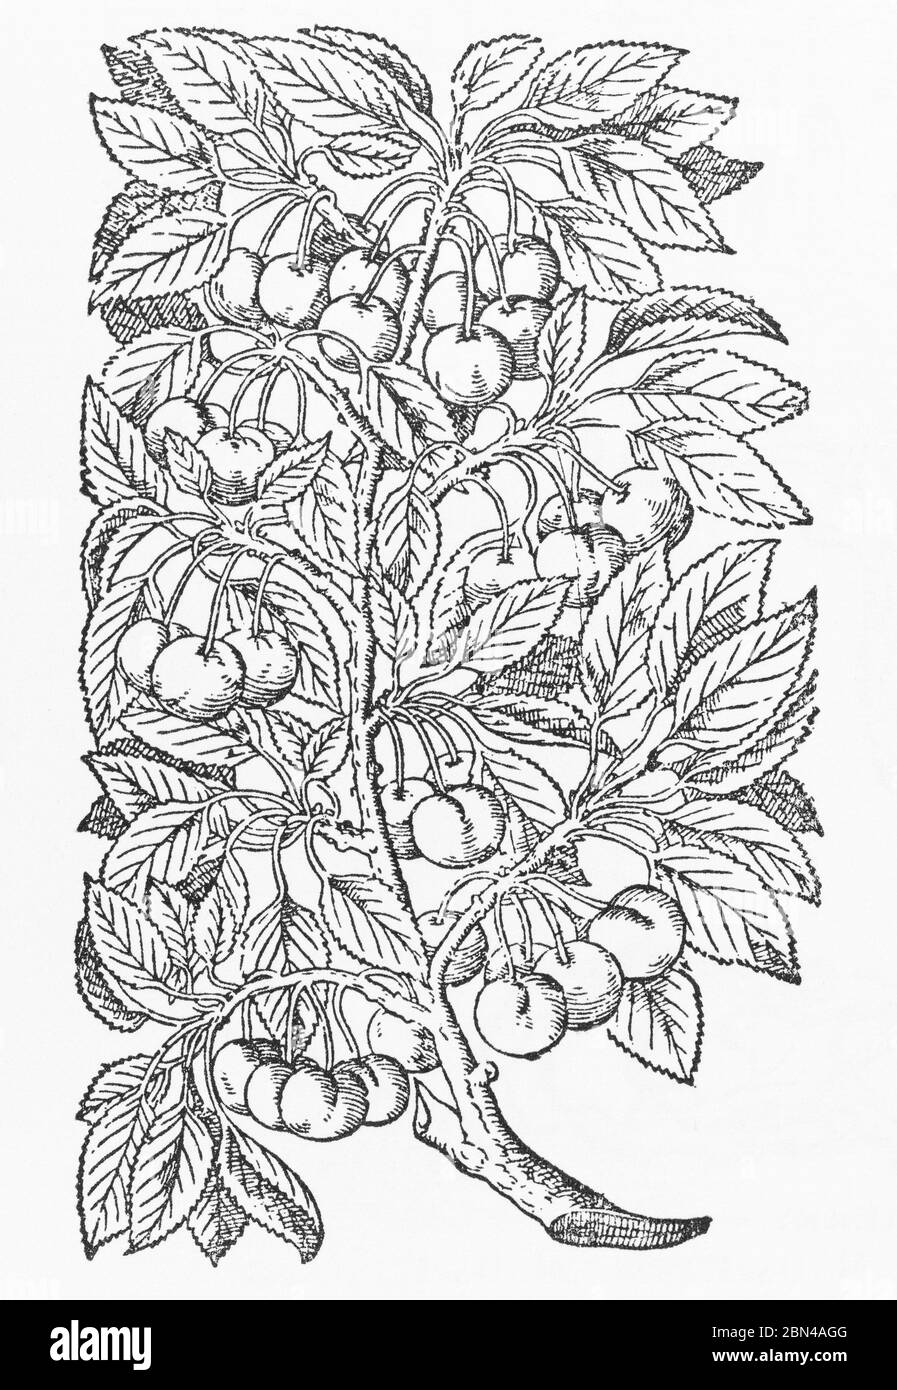 Gascogne Kirschpflanze Holzschnitt aus Gerarde's Herball, Pflanzengeschichte. Er bezeichnet es als Cerasus Gasconica. P1320 Stockfoto